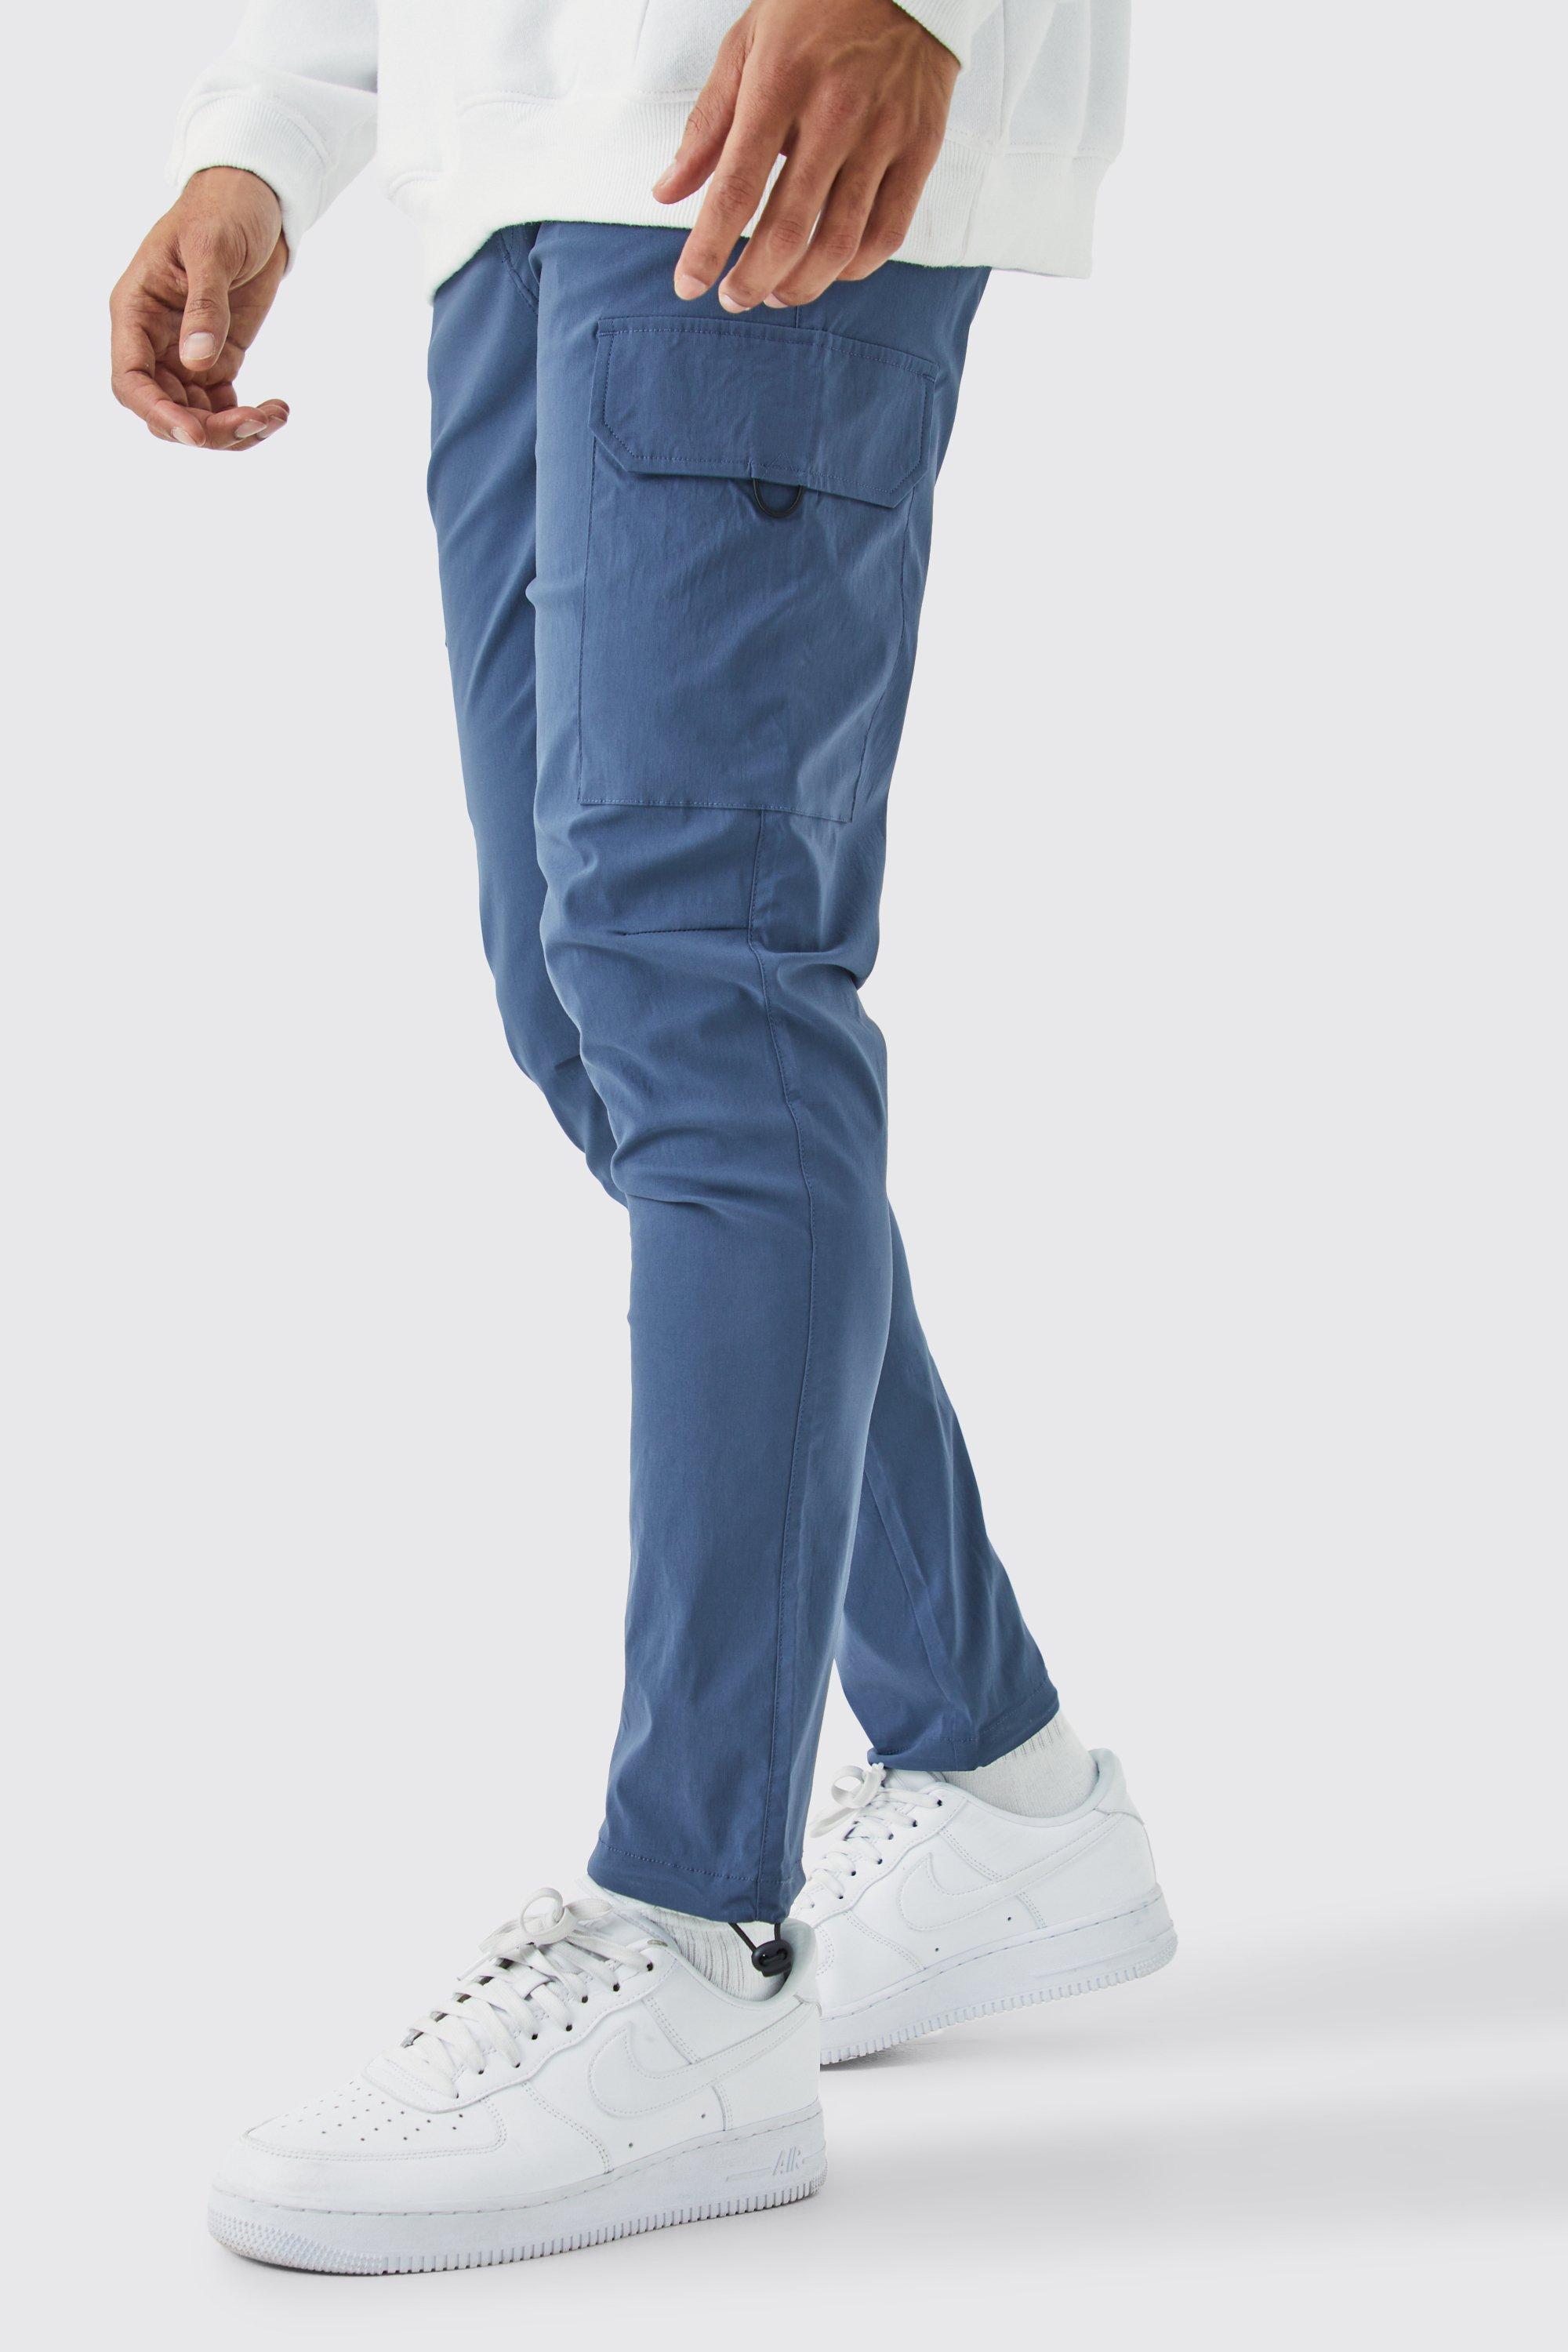 Mens Grey Elastic Lightweight Stretch Skinny Cargo Trouser, Grey